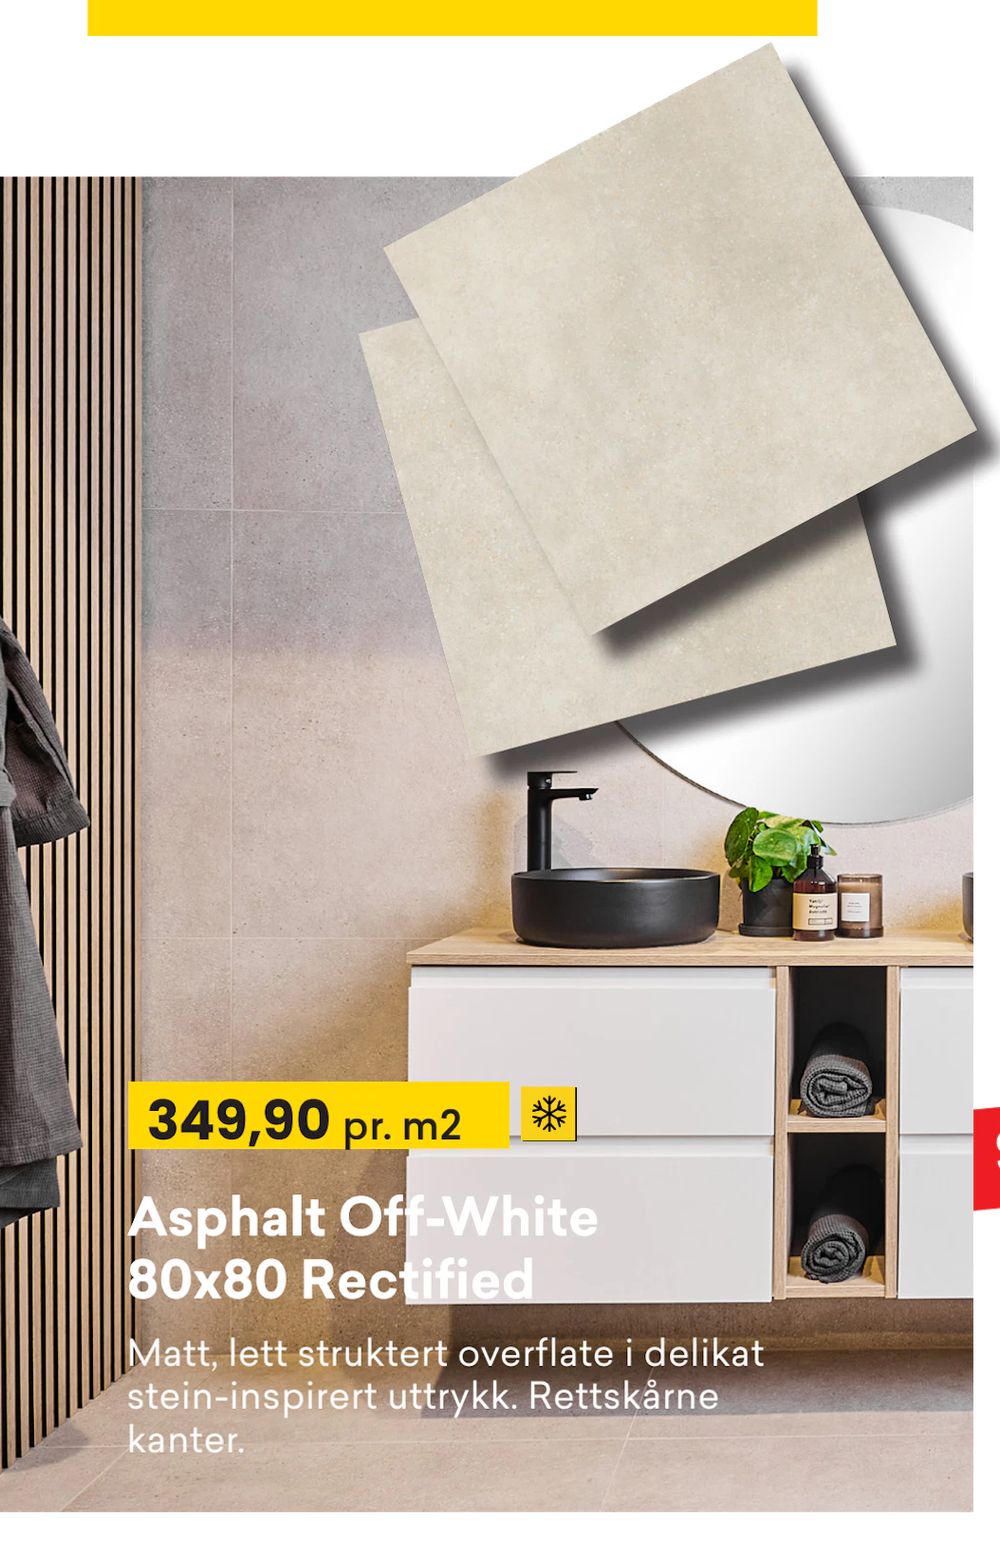 Tilbud på Asphalt Off-White 80x80 Rectified fra Right Price Tiles til 349,90 kr